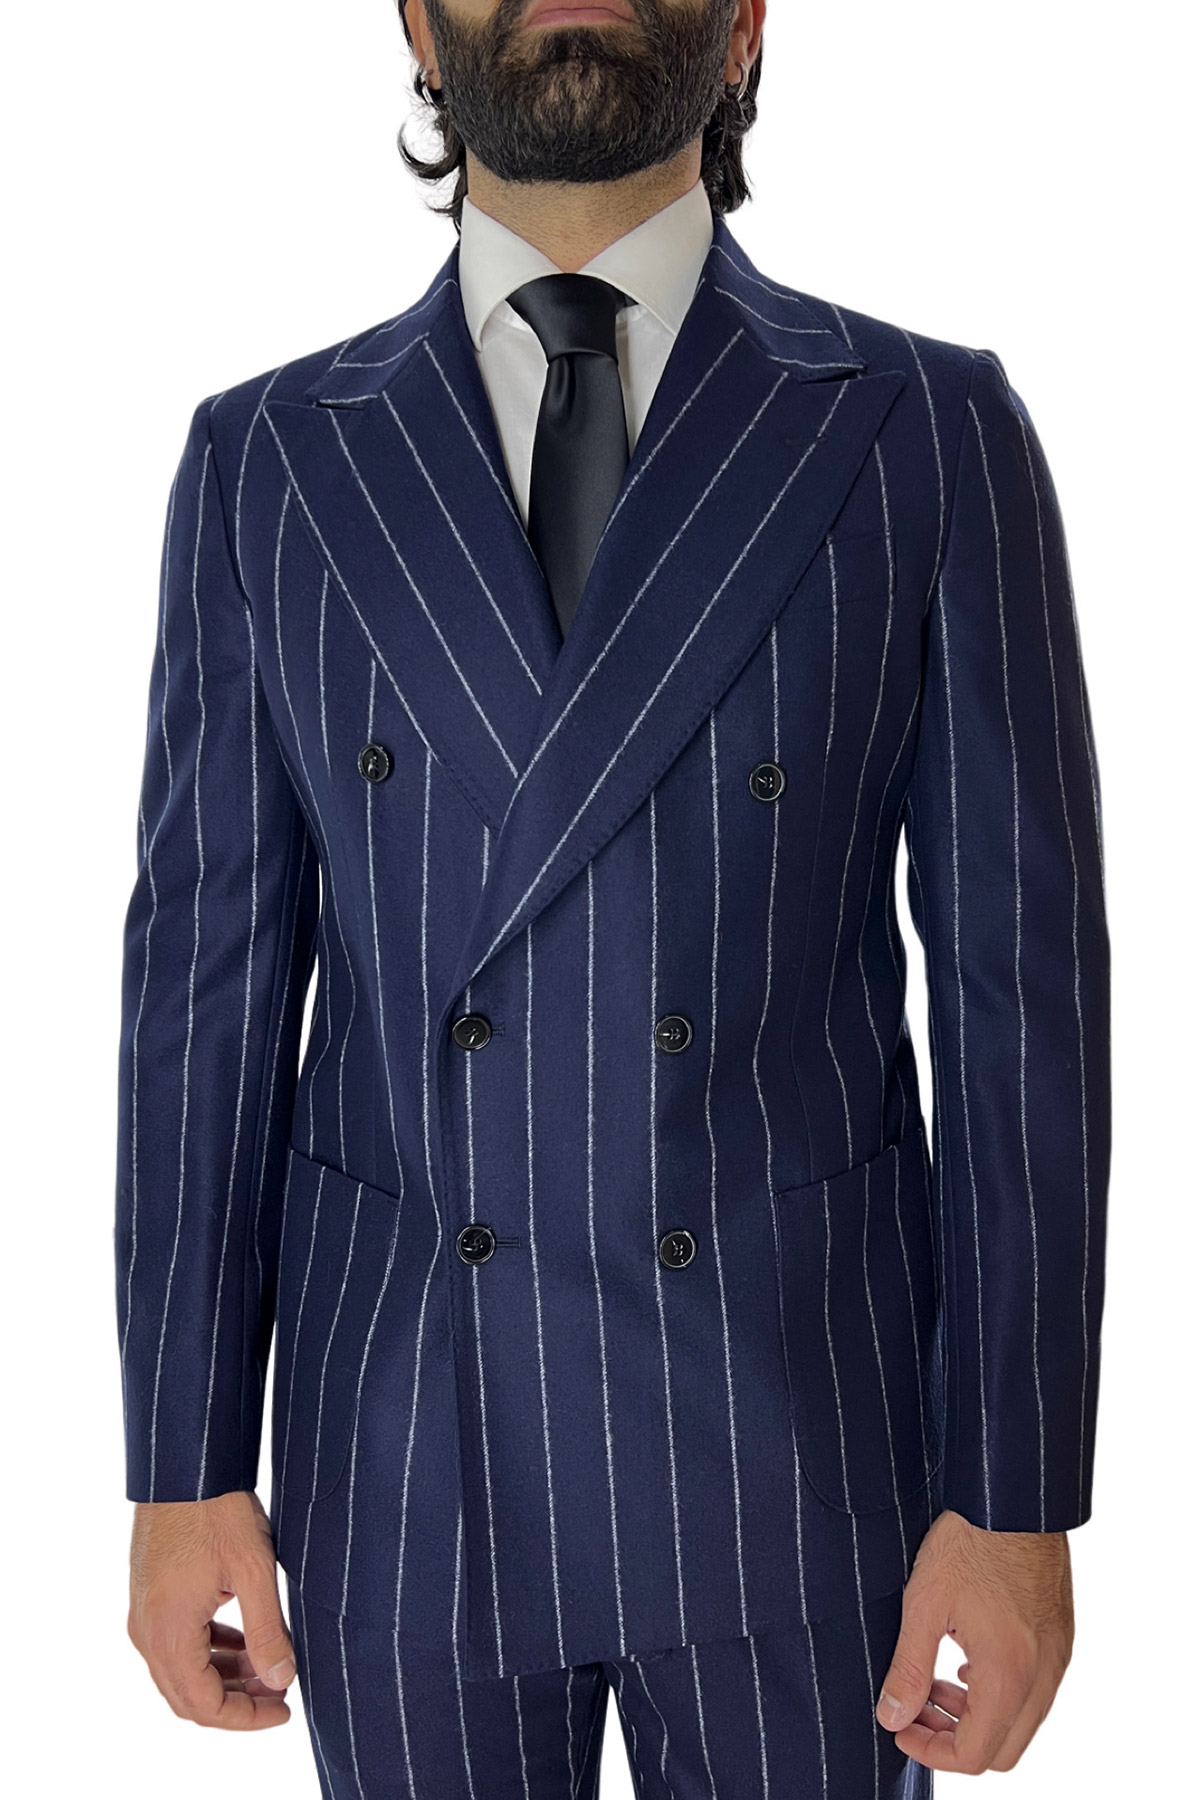 Abito uomo blu con giacca doppiopetto Gessata grigia in lana Flanella e pantalone doppia pinces Vitale Barberis Canonico